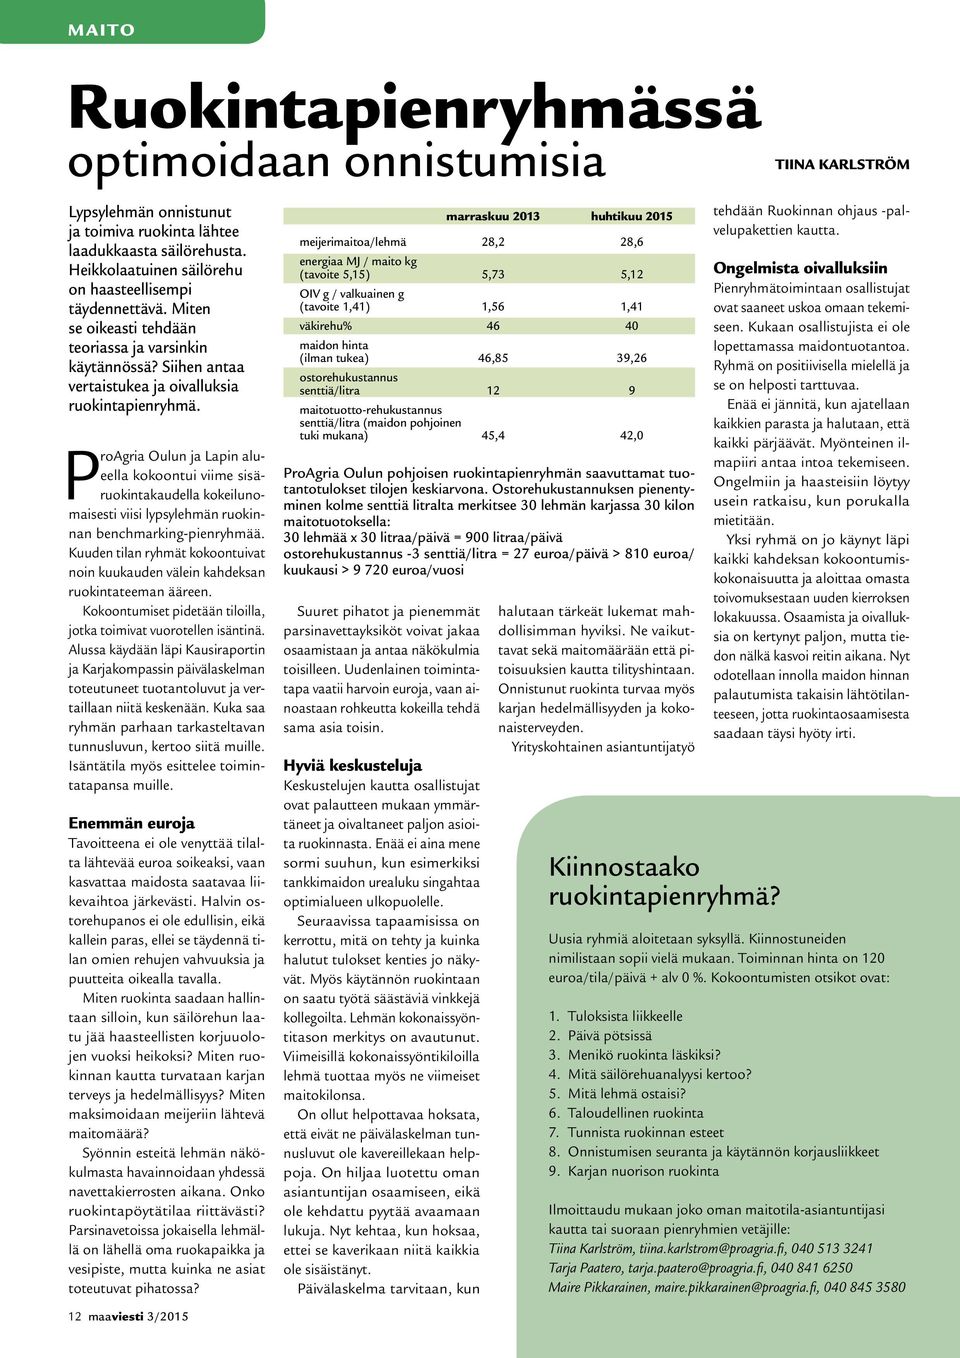 ProAgria Oulun ja Lapin alueella kokoontui viime sisäruokintakaudella kokeilunomaisesti viisi lypsylehmän ruokinnan benchmarking-pienryhmää.